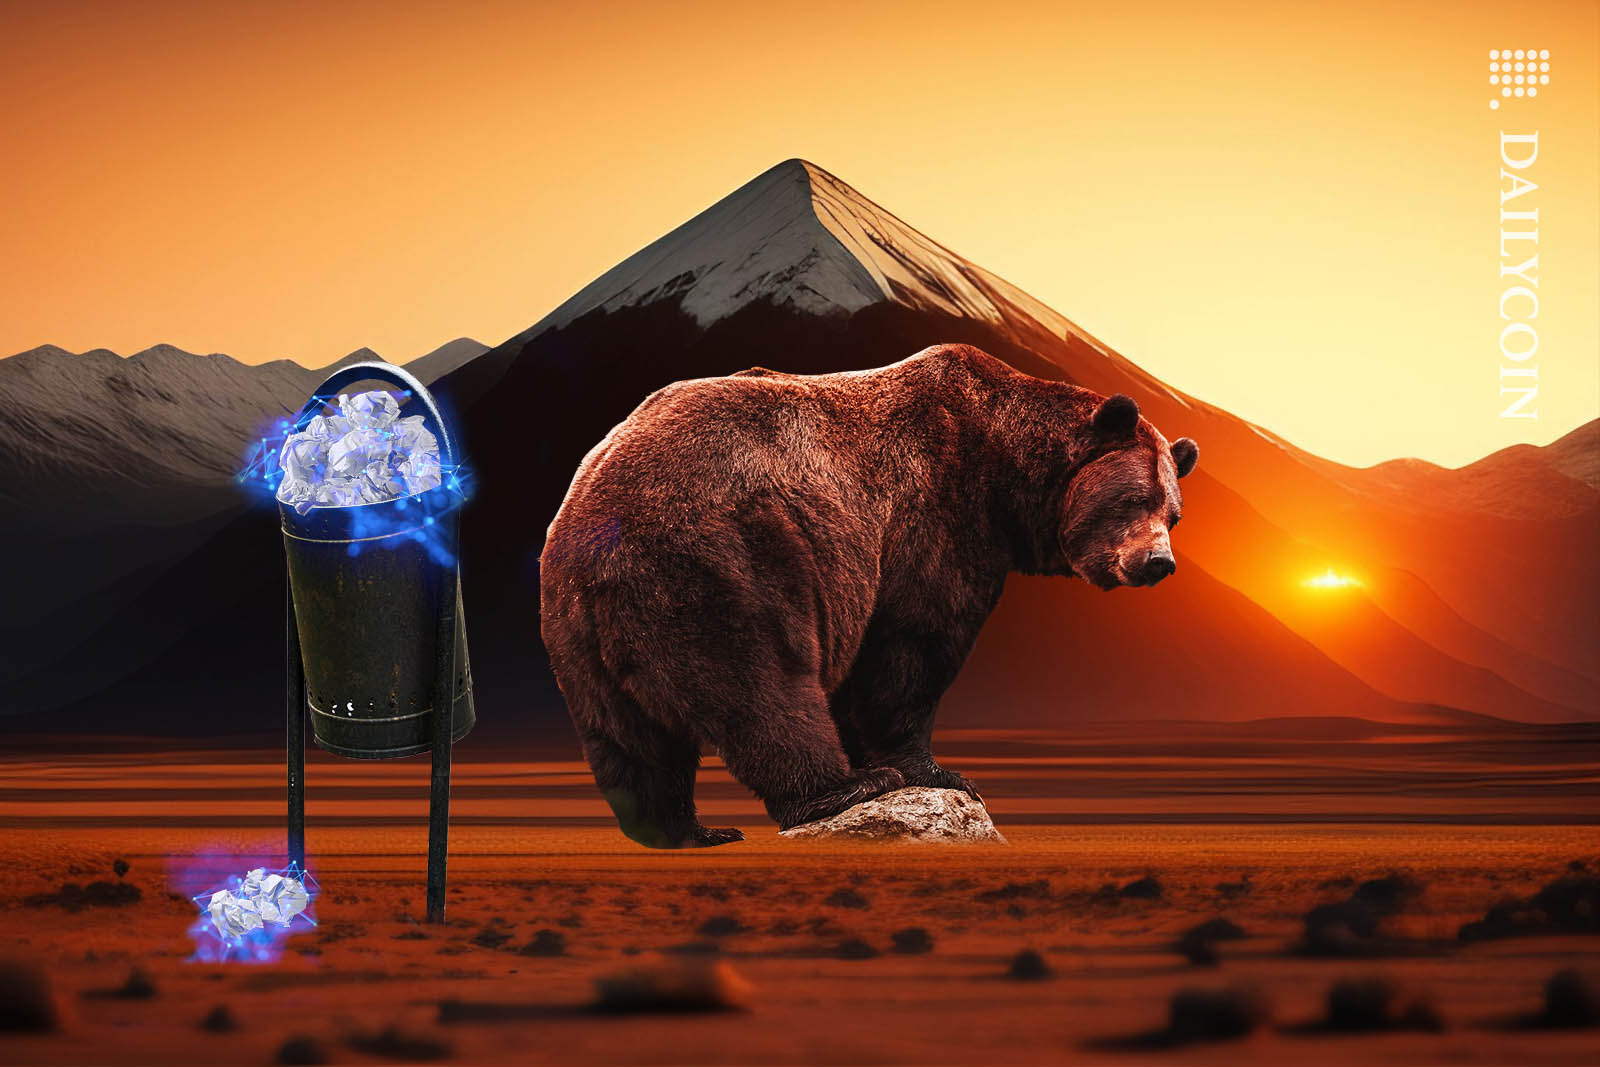 A huge bear walking away from a bin full of glowing blockchain documents.